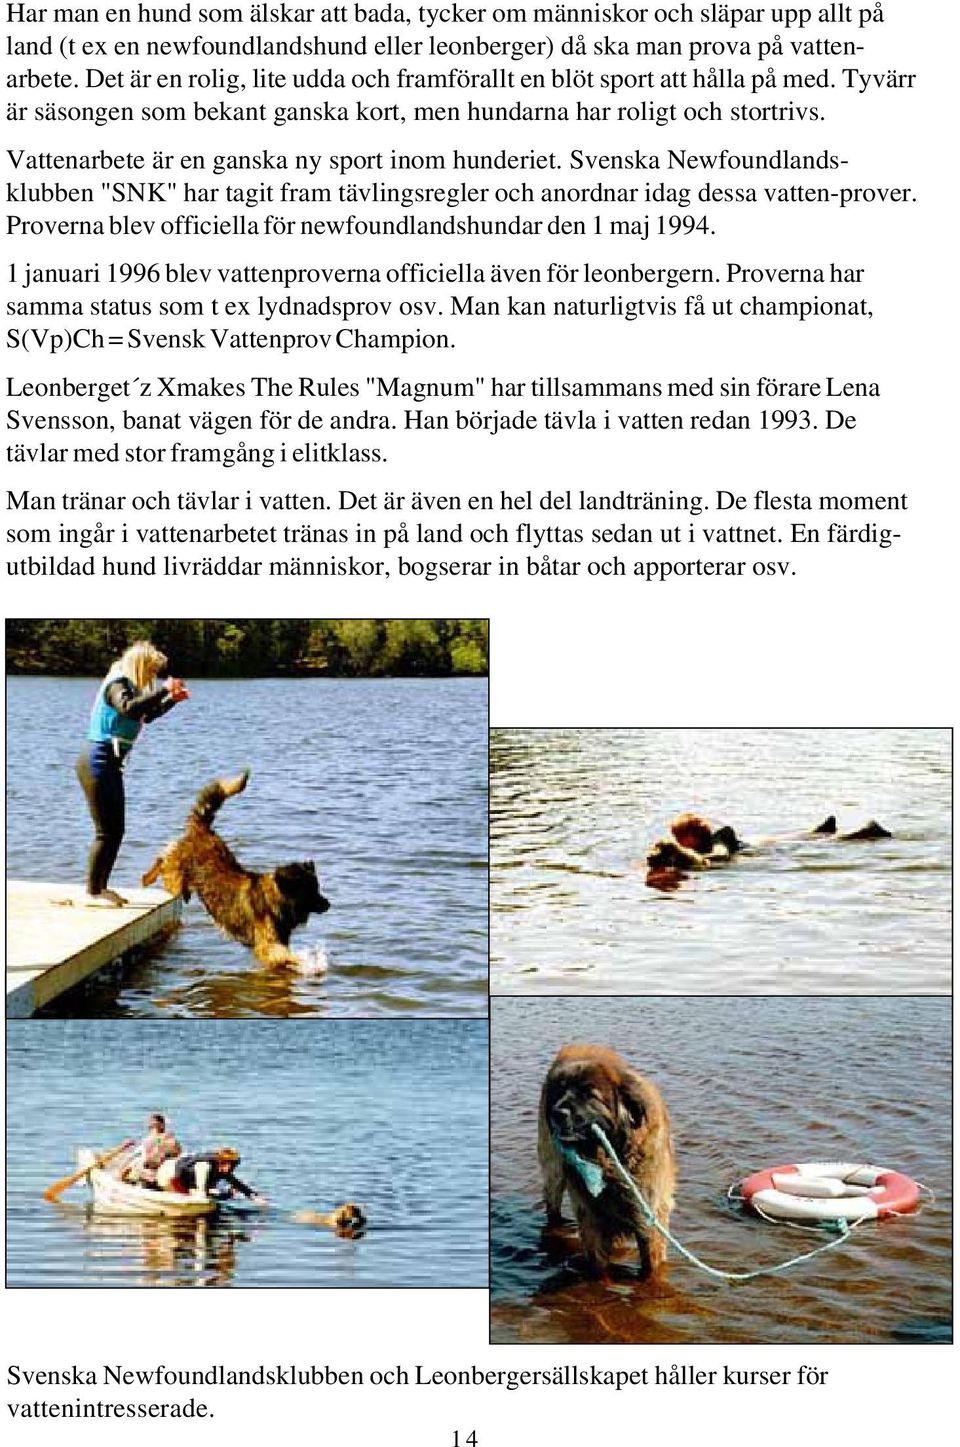 Vattenarbete är en ganska ny sport inom hunderiet. Svenska Newfoundlandsklubben "SNK" har tagit fram tävlingsregler och anordnar idag dessa vatten-prover.